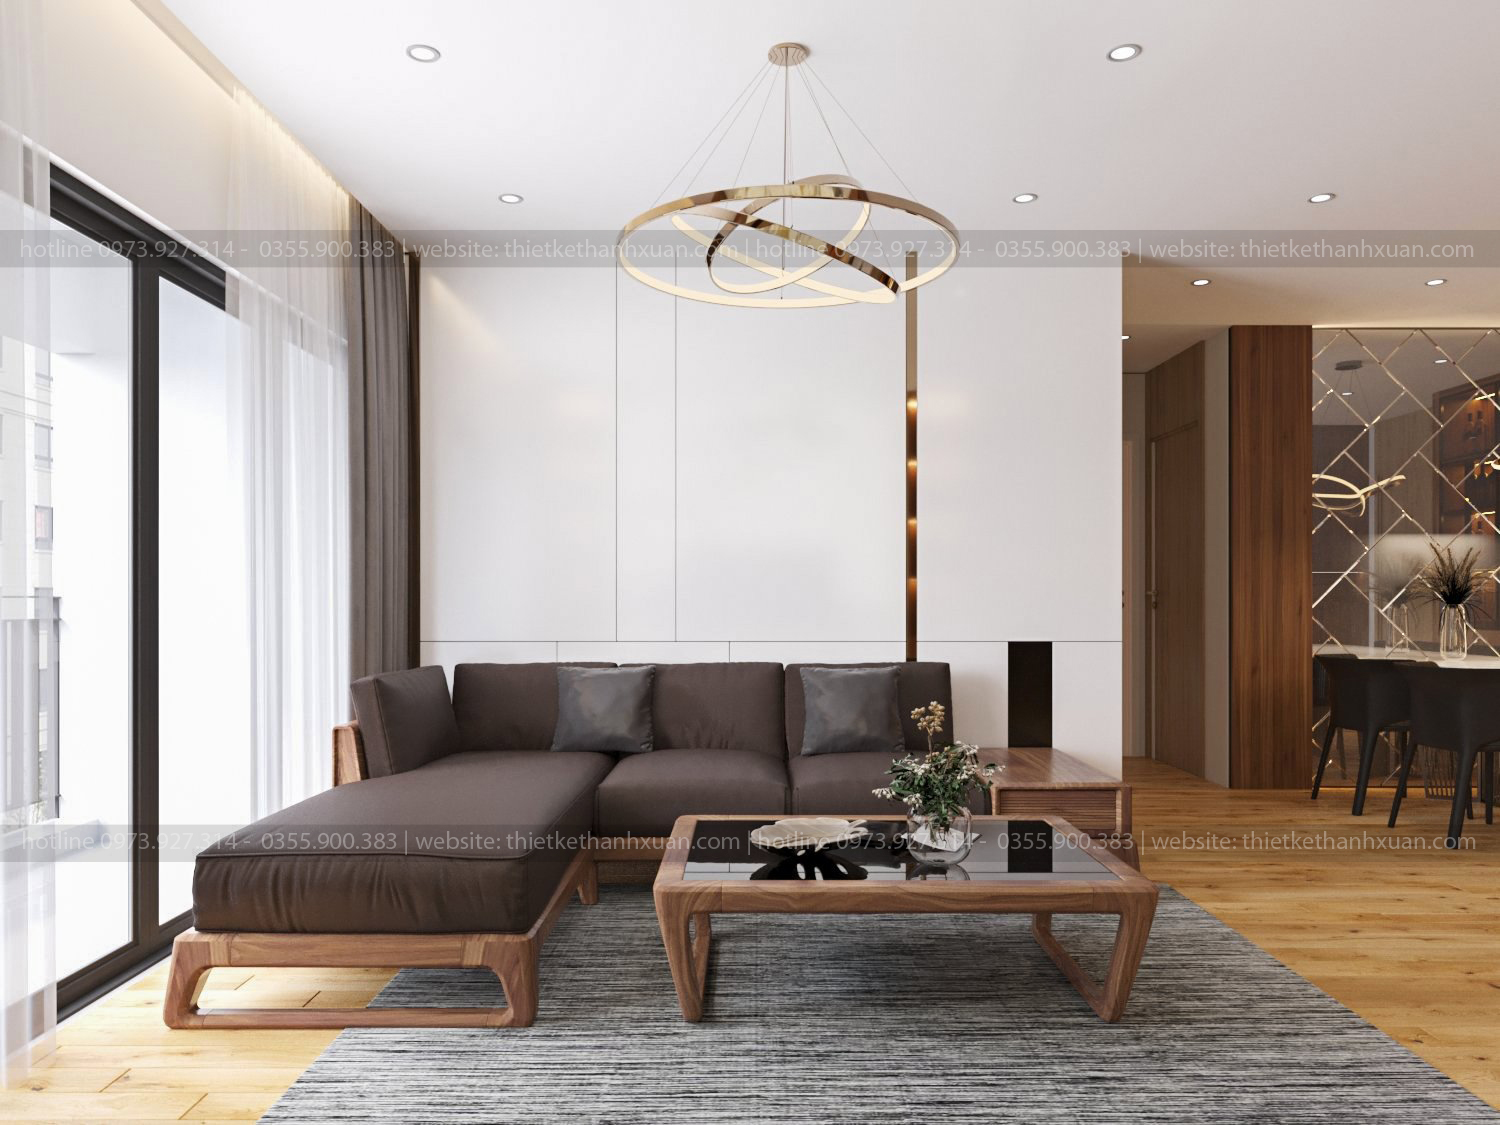 thiết kế phòng khách chung cư hiện đại bằng gỗ An Cường